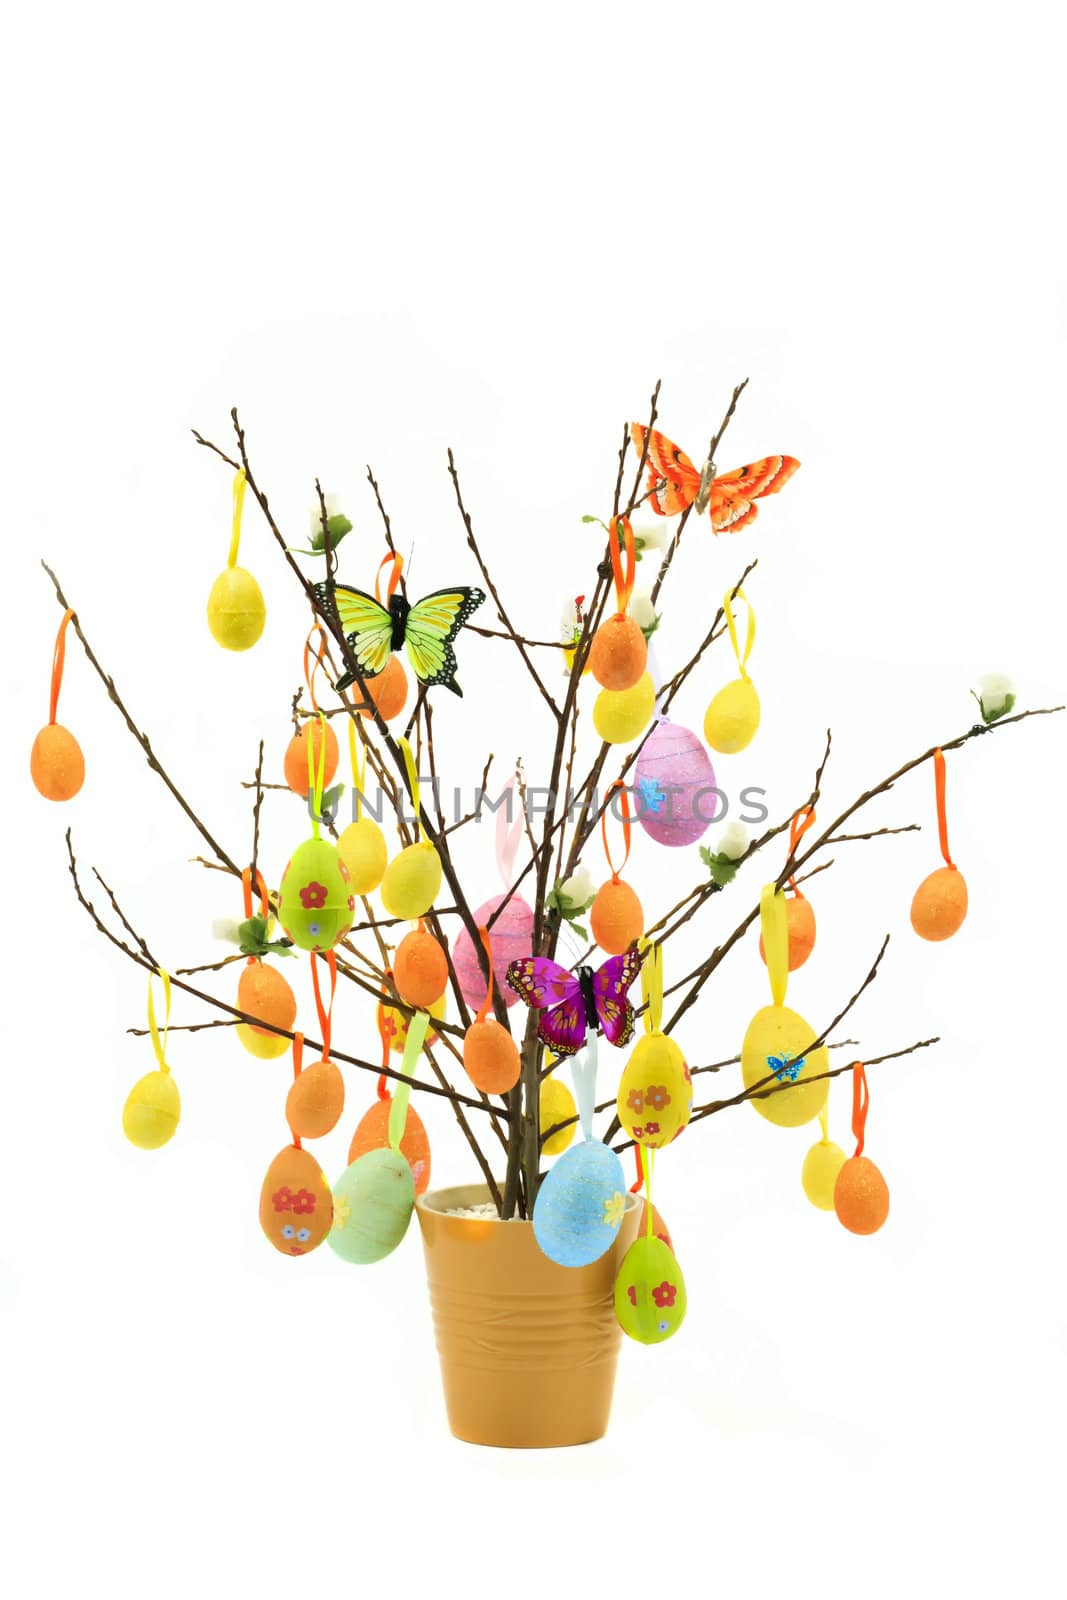 Tree with Easter Eggs by Nikolaniko